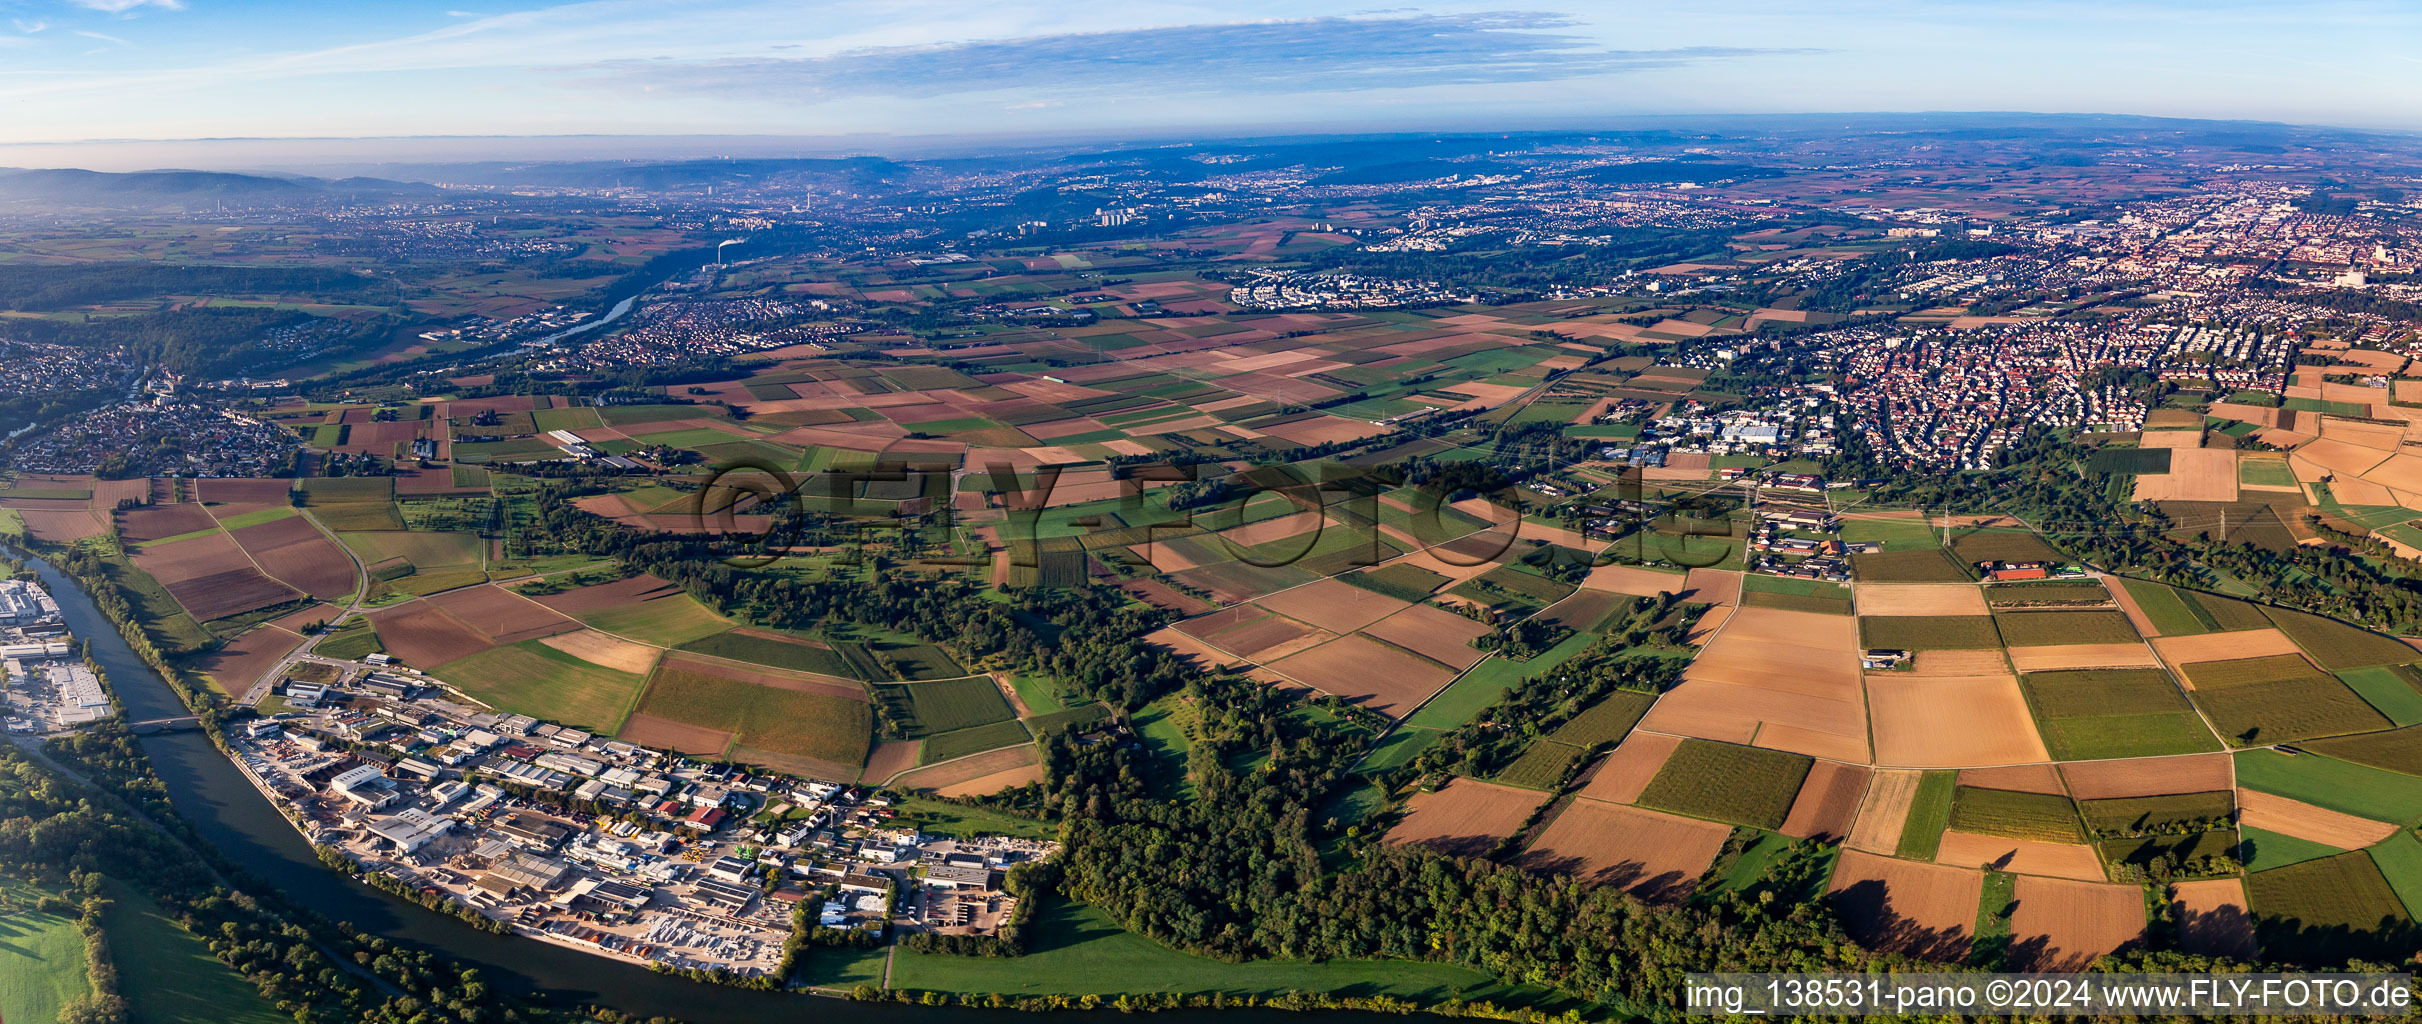 Vue aérienne de Neckar Panorama Oberwiesen à S à le quartier Oßweil in Ludwigsburg dans le département Bade-Wurtemberg, Allemagne